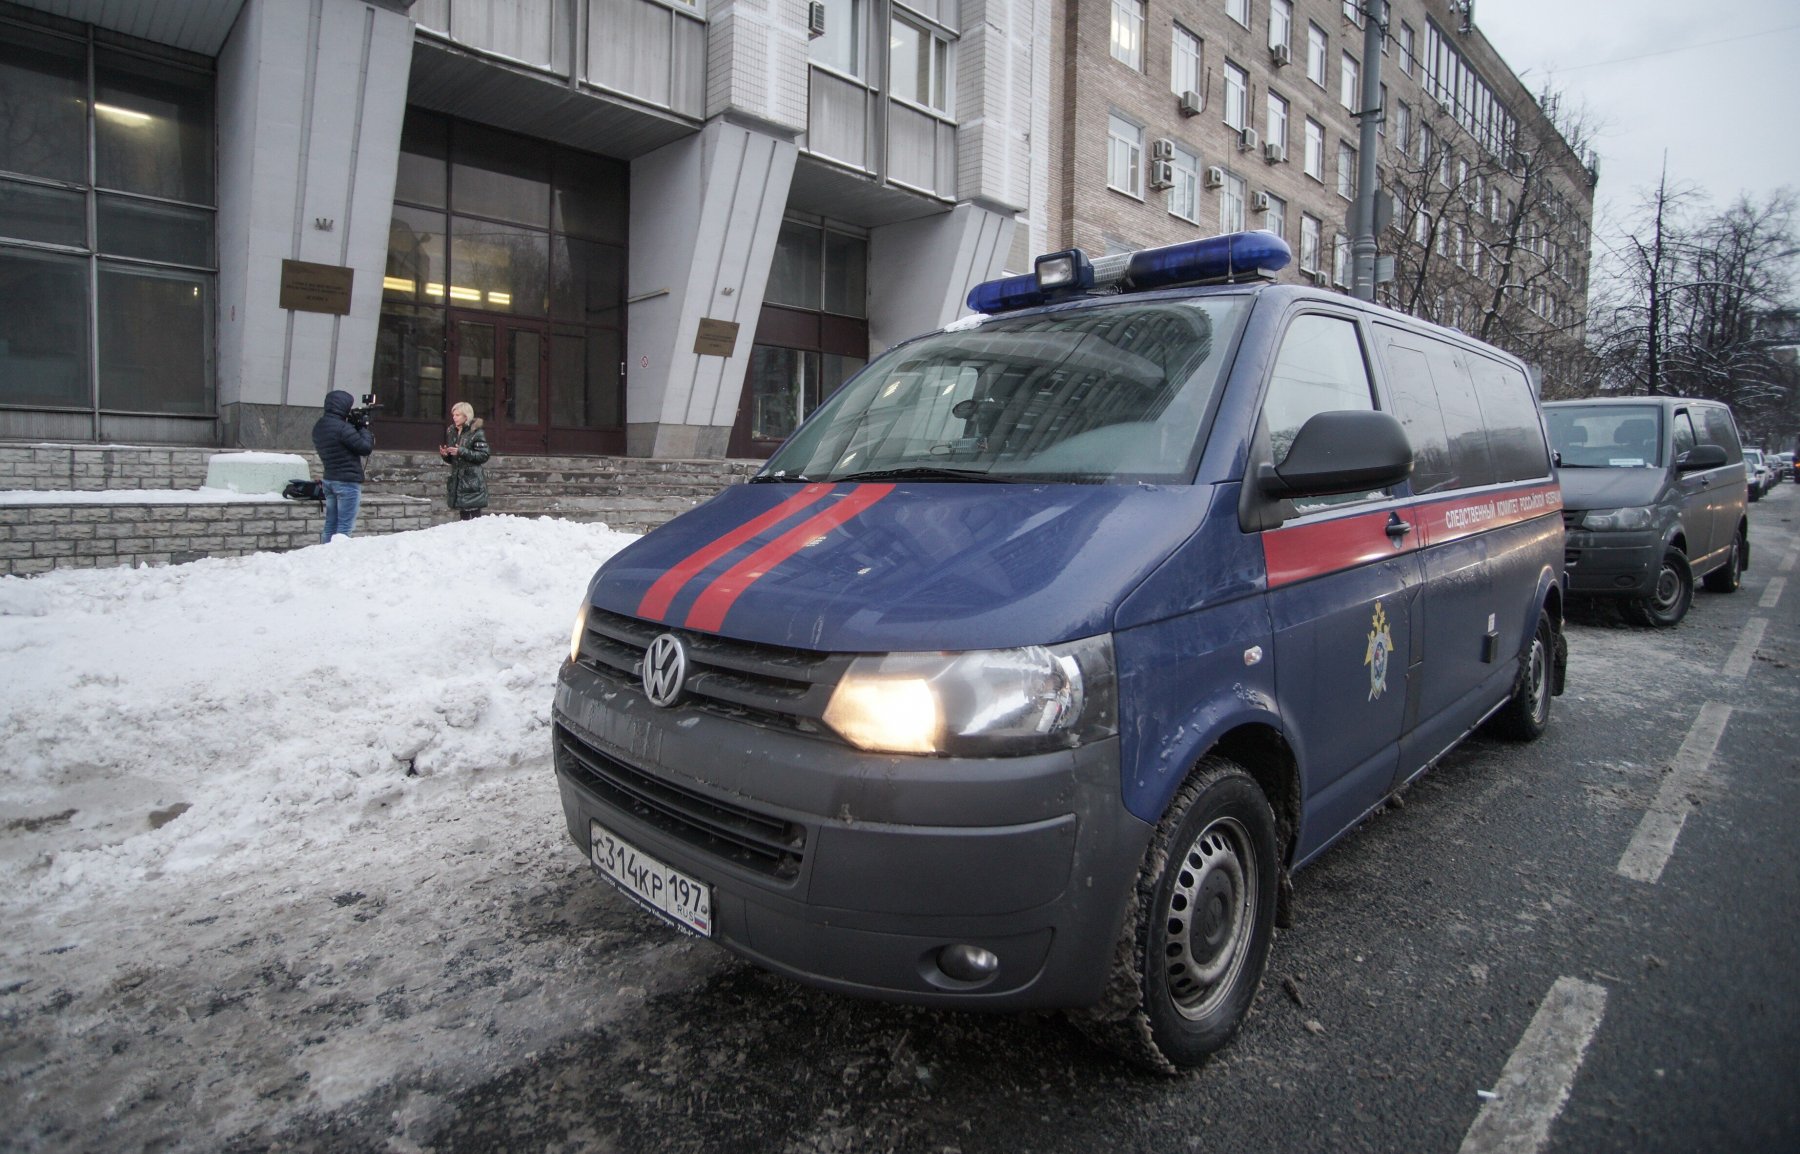 Сотрудник полиции был задержан в Петербурге из-за подозрений в педофилии